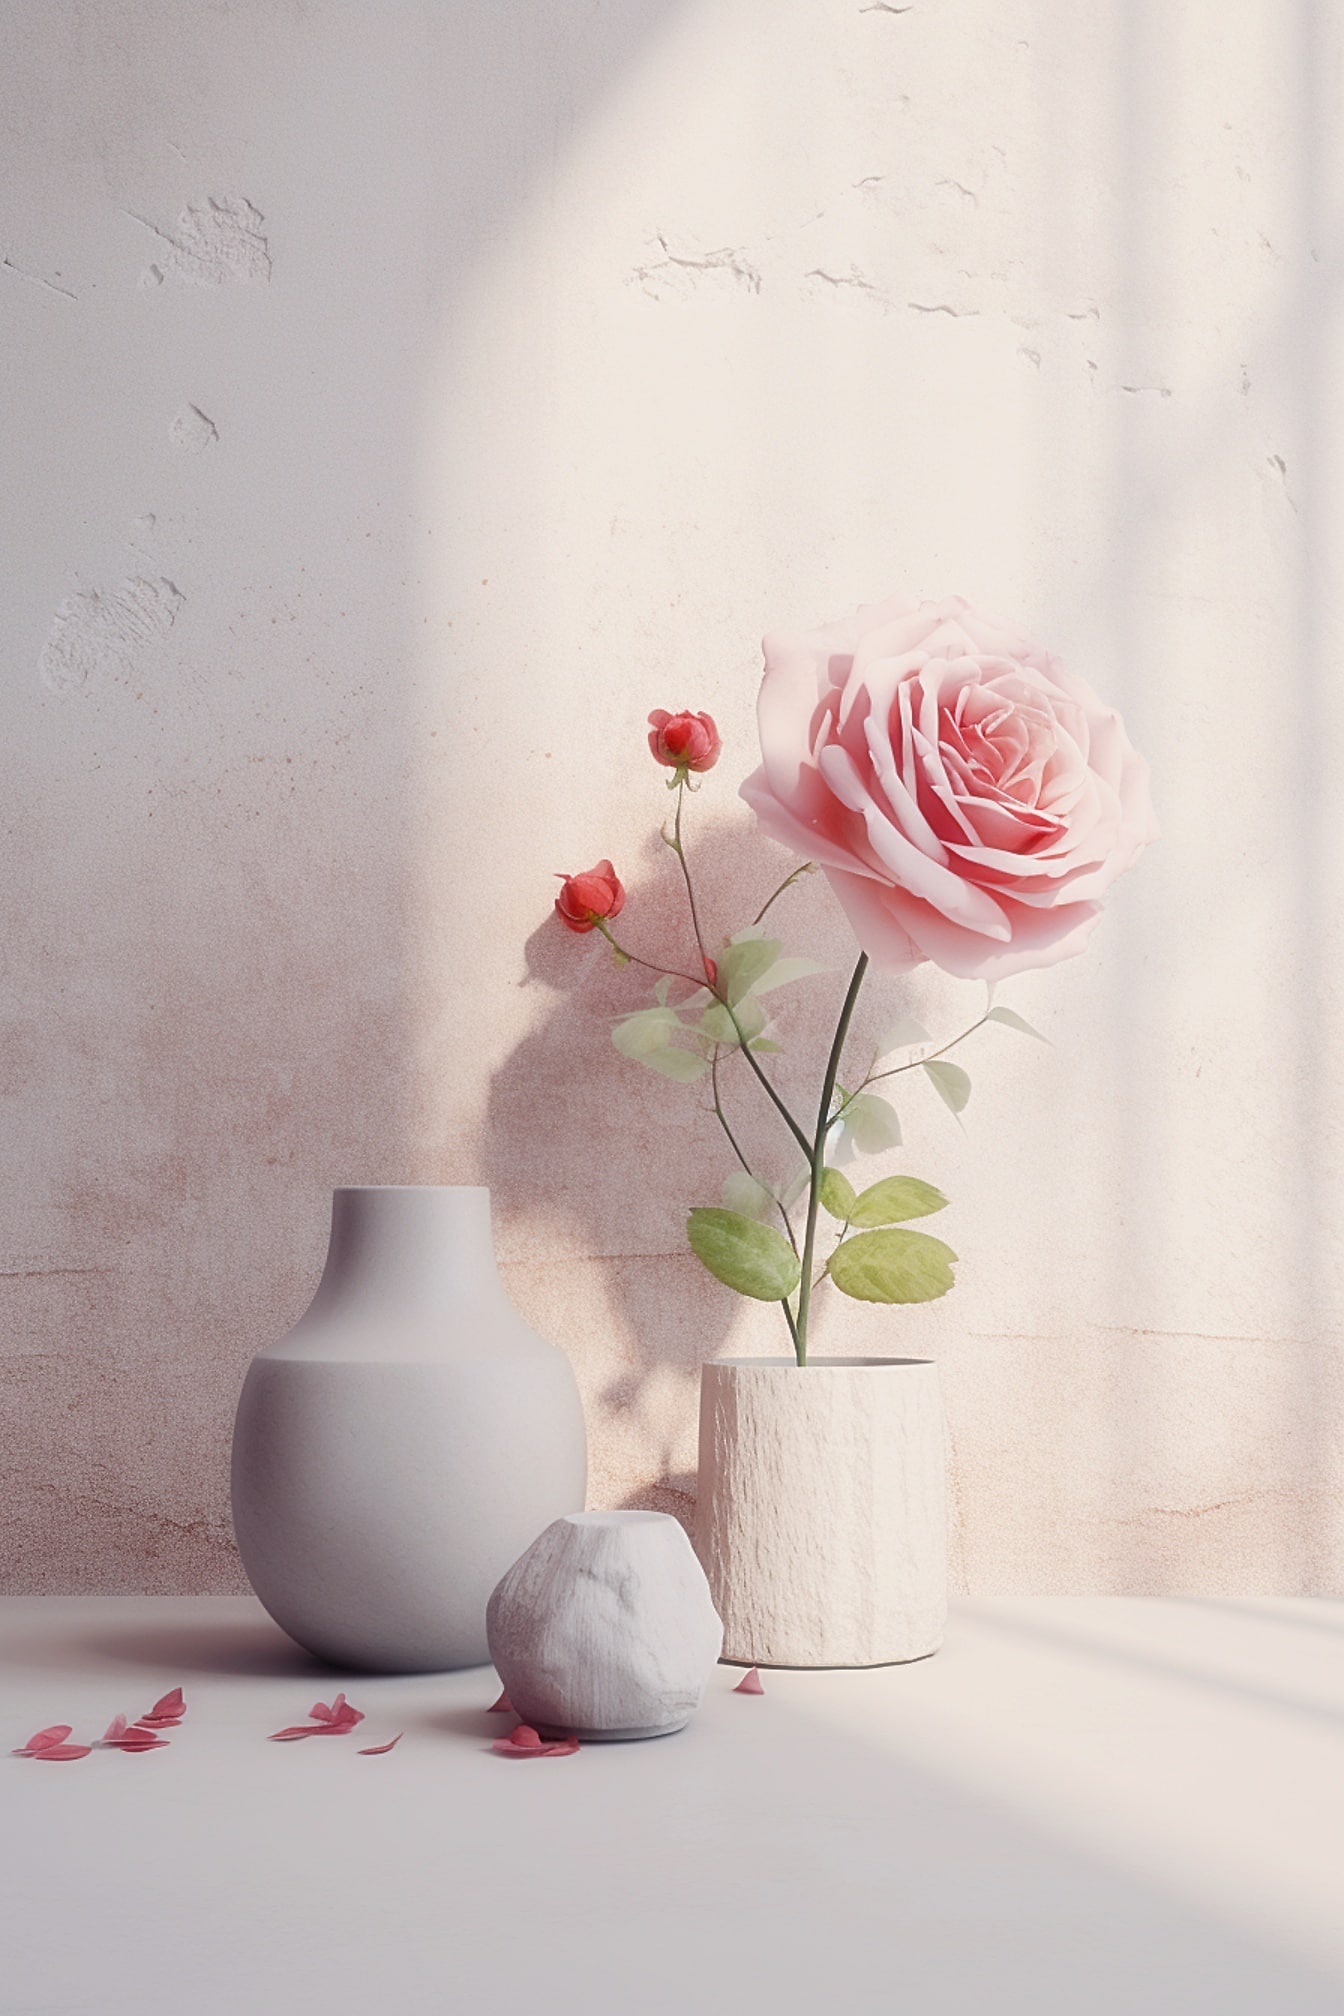 Ροζ τριαντάφυλλο σε λευκό πέτρινο βάζο με άλλο άδειο βάζο